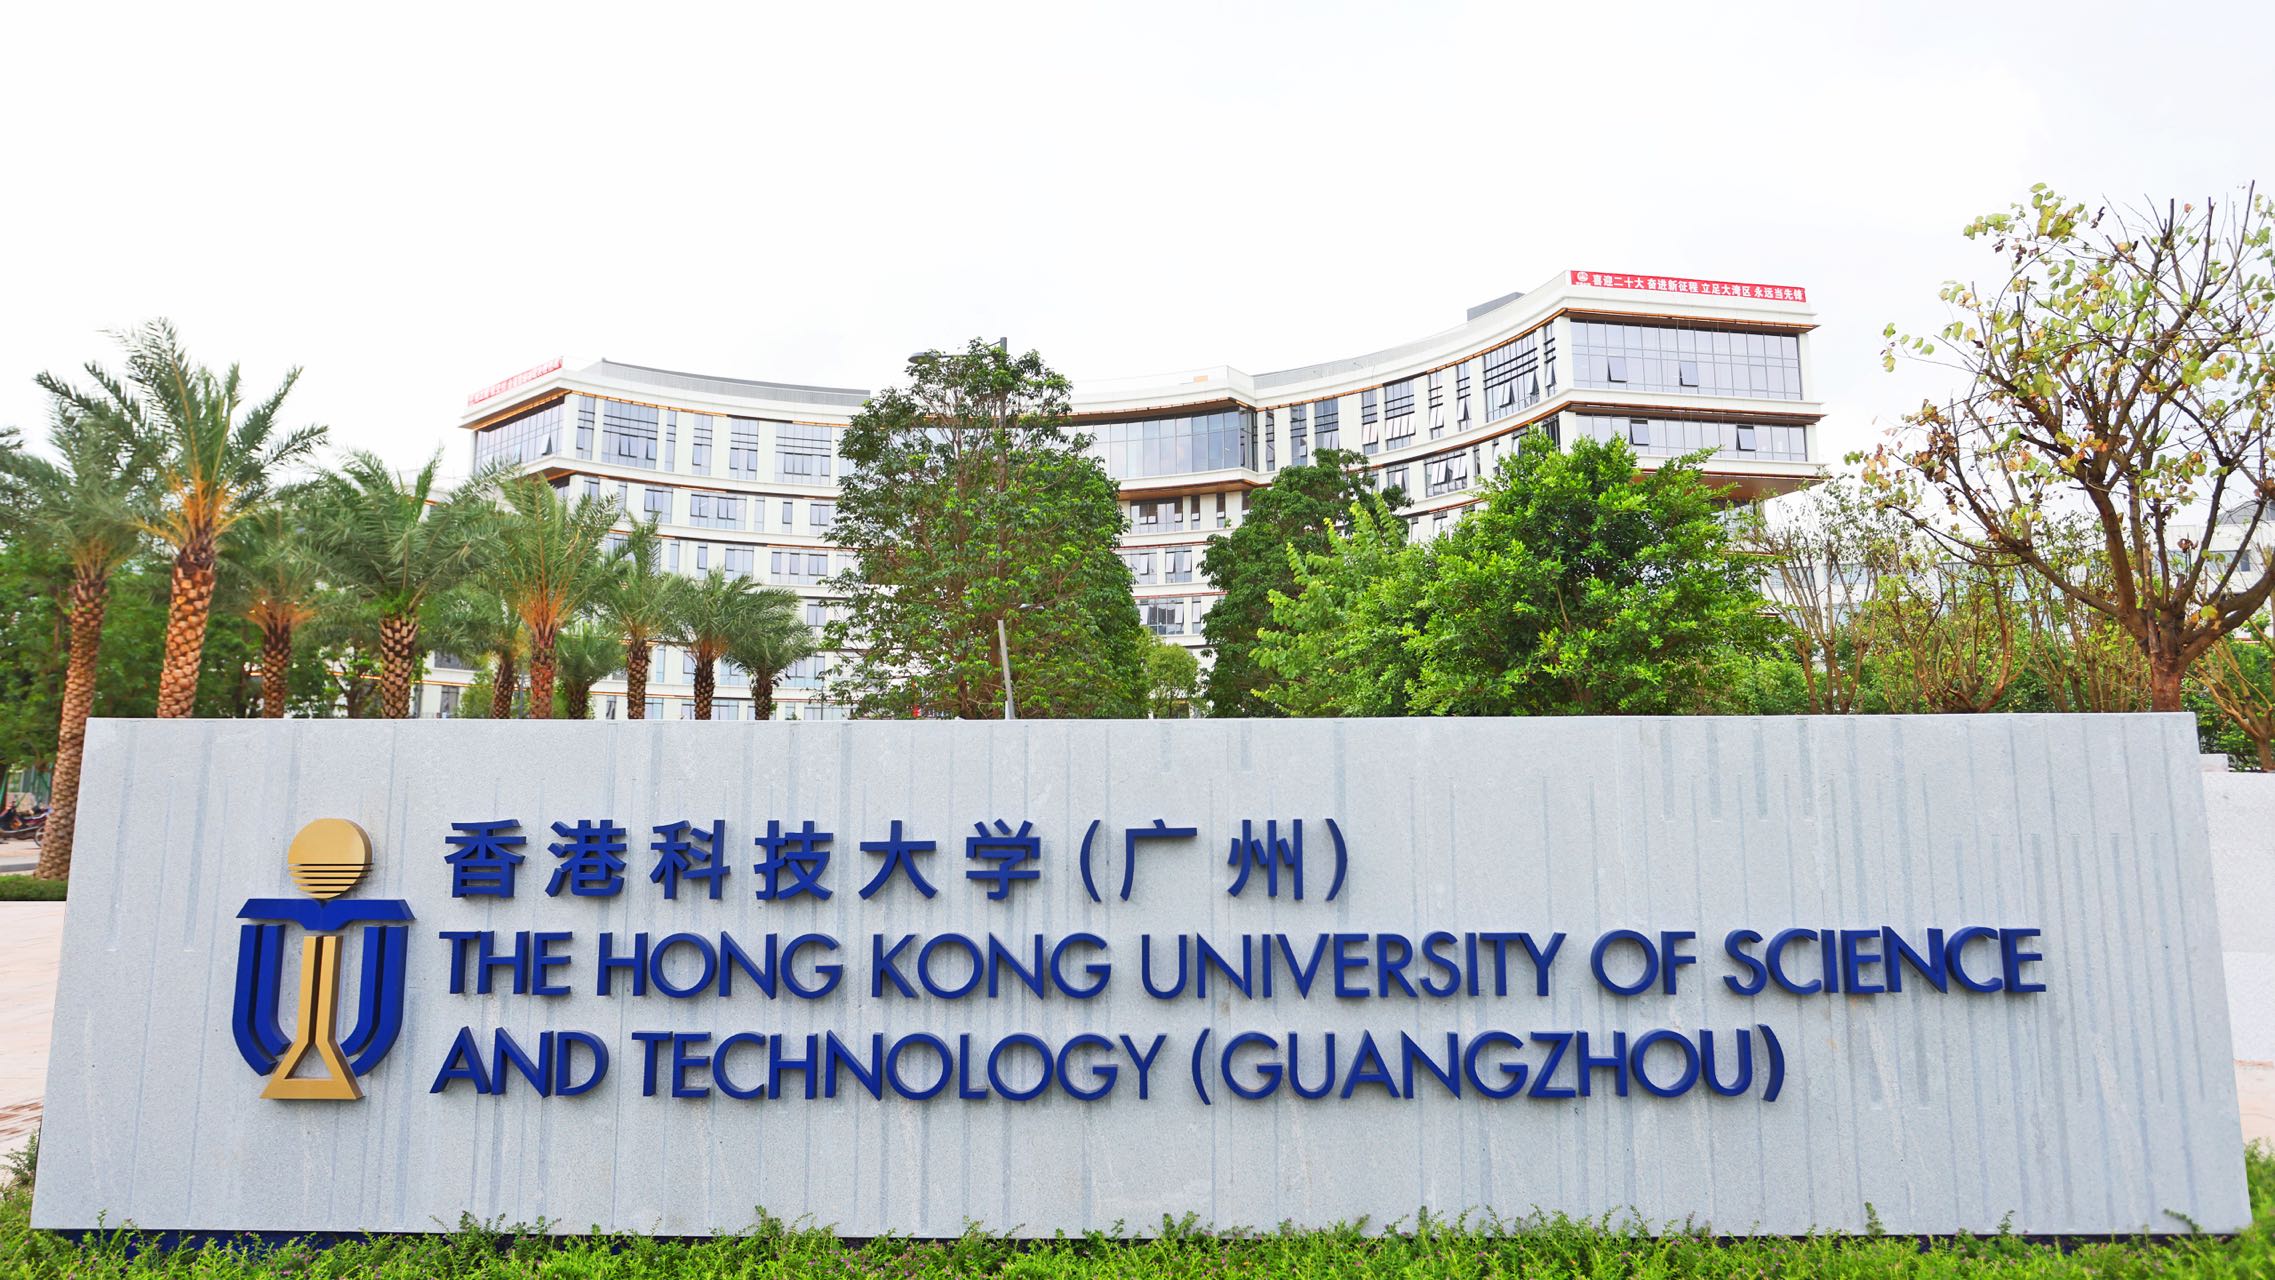 林克庆到南沙区调研检查香港科技大学（广州）建设